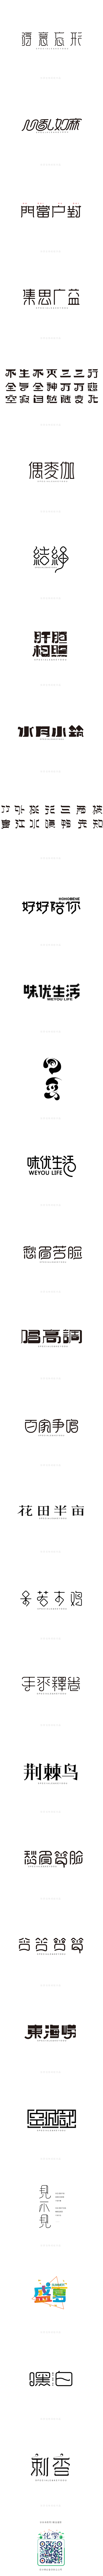 2015年字体设计整理-张家佳特战班-字...